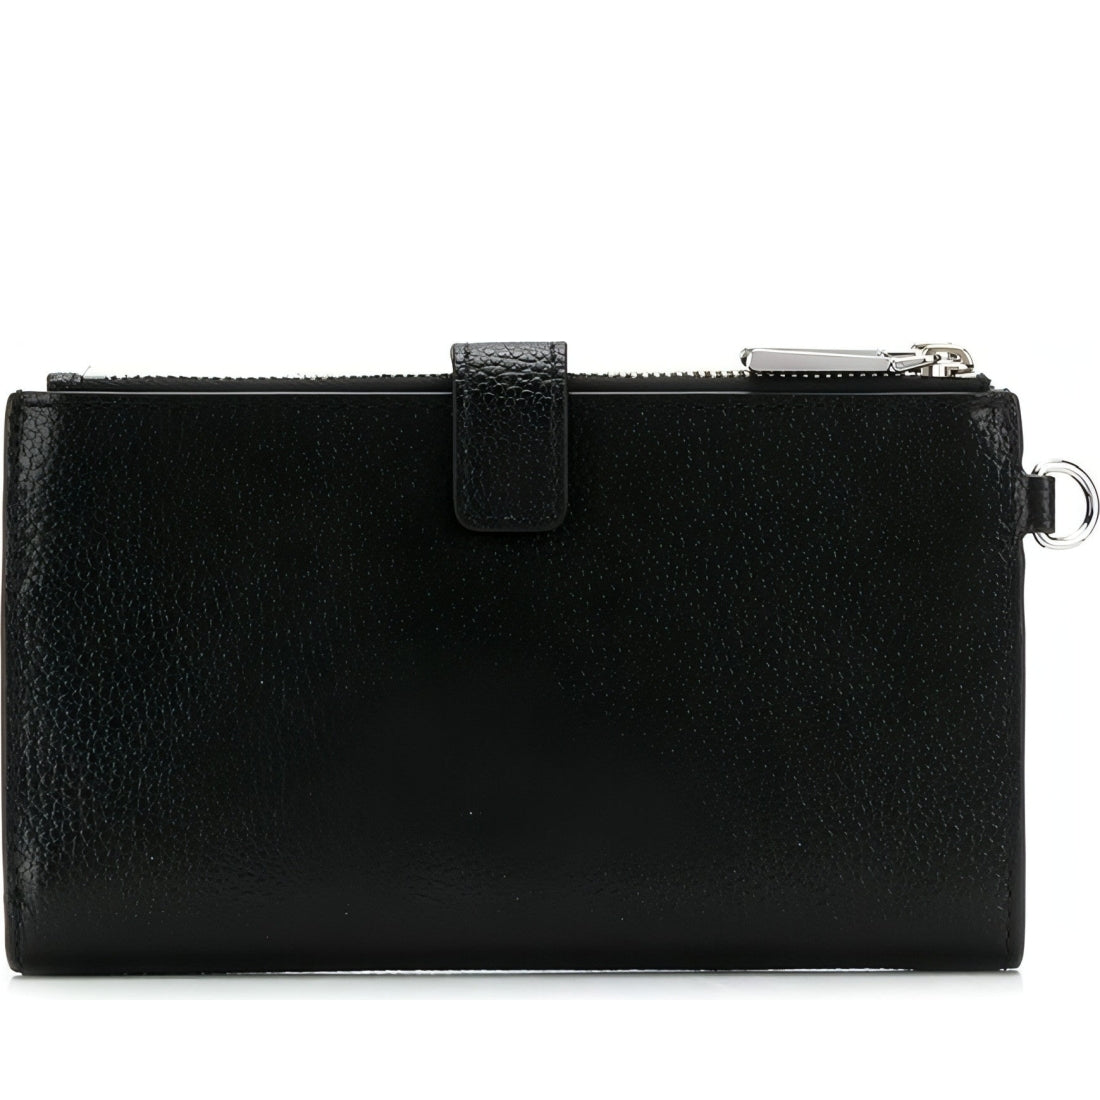 Michael Kors womens black adele pebbled leather smartphone wallet | Vilbury London